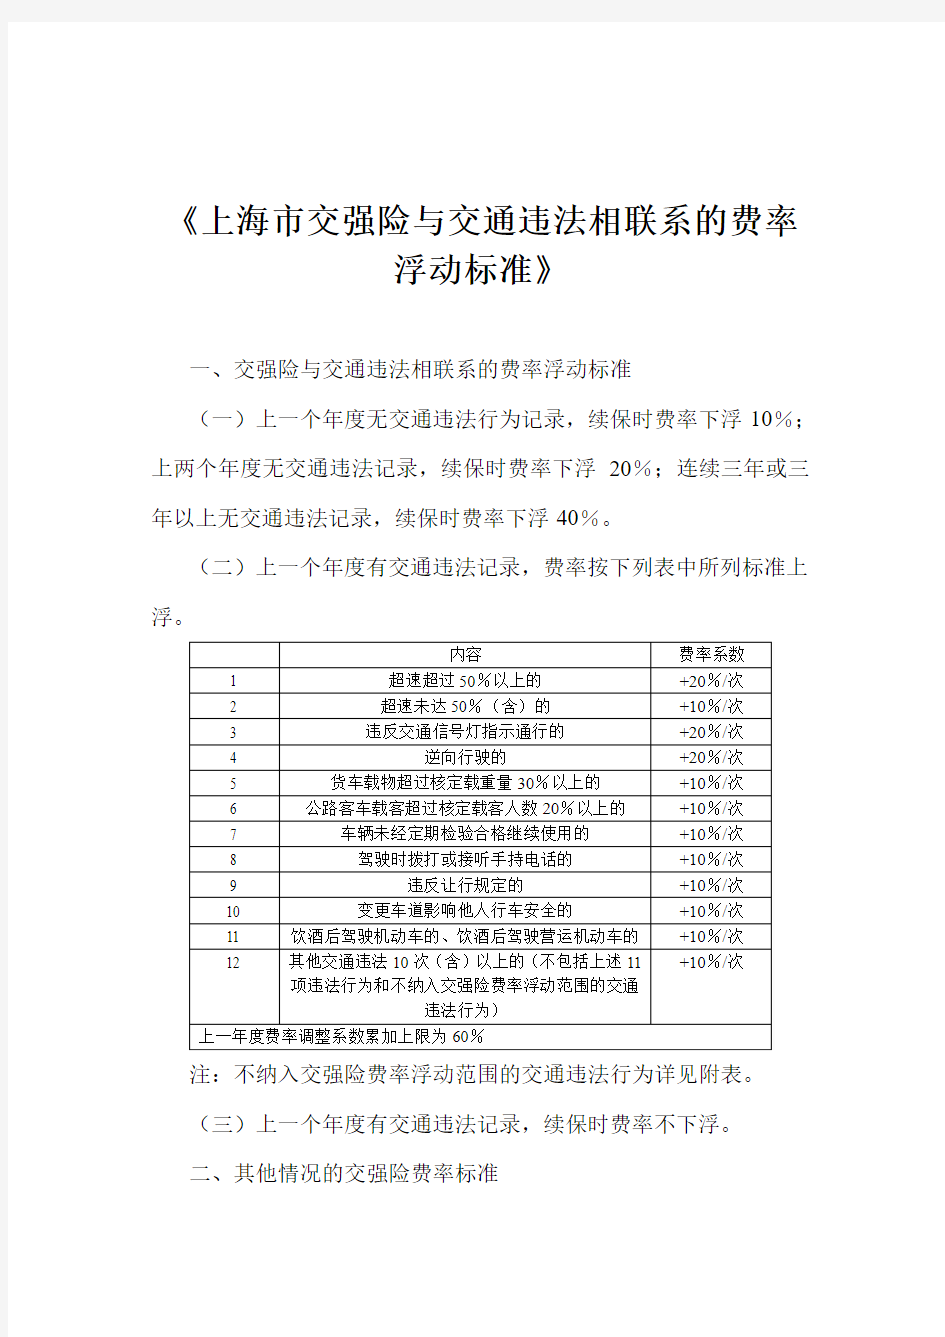 《上海市交强险与交通违法相联系的费率浮动标准》